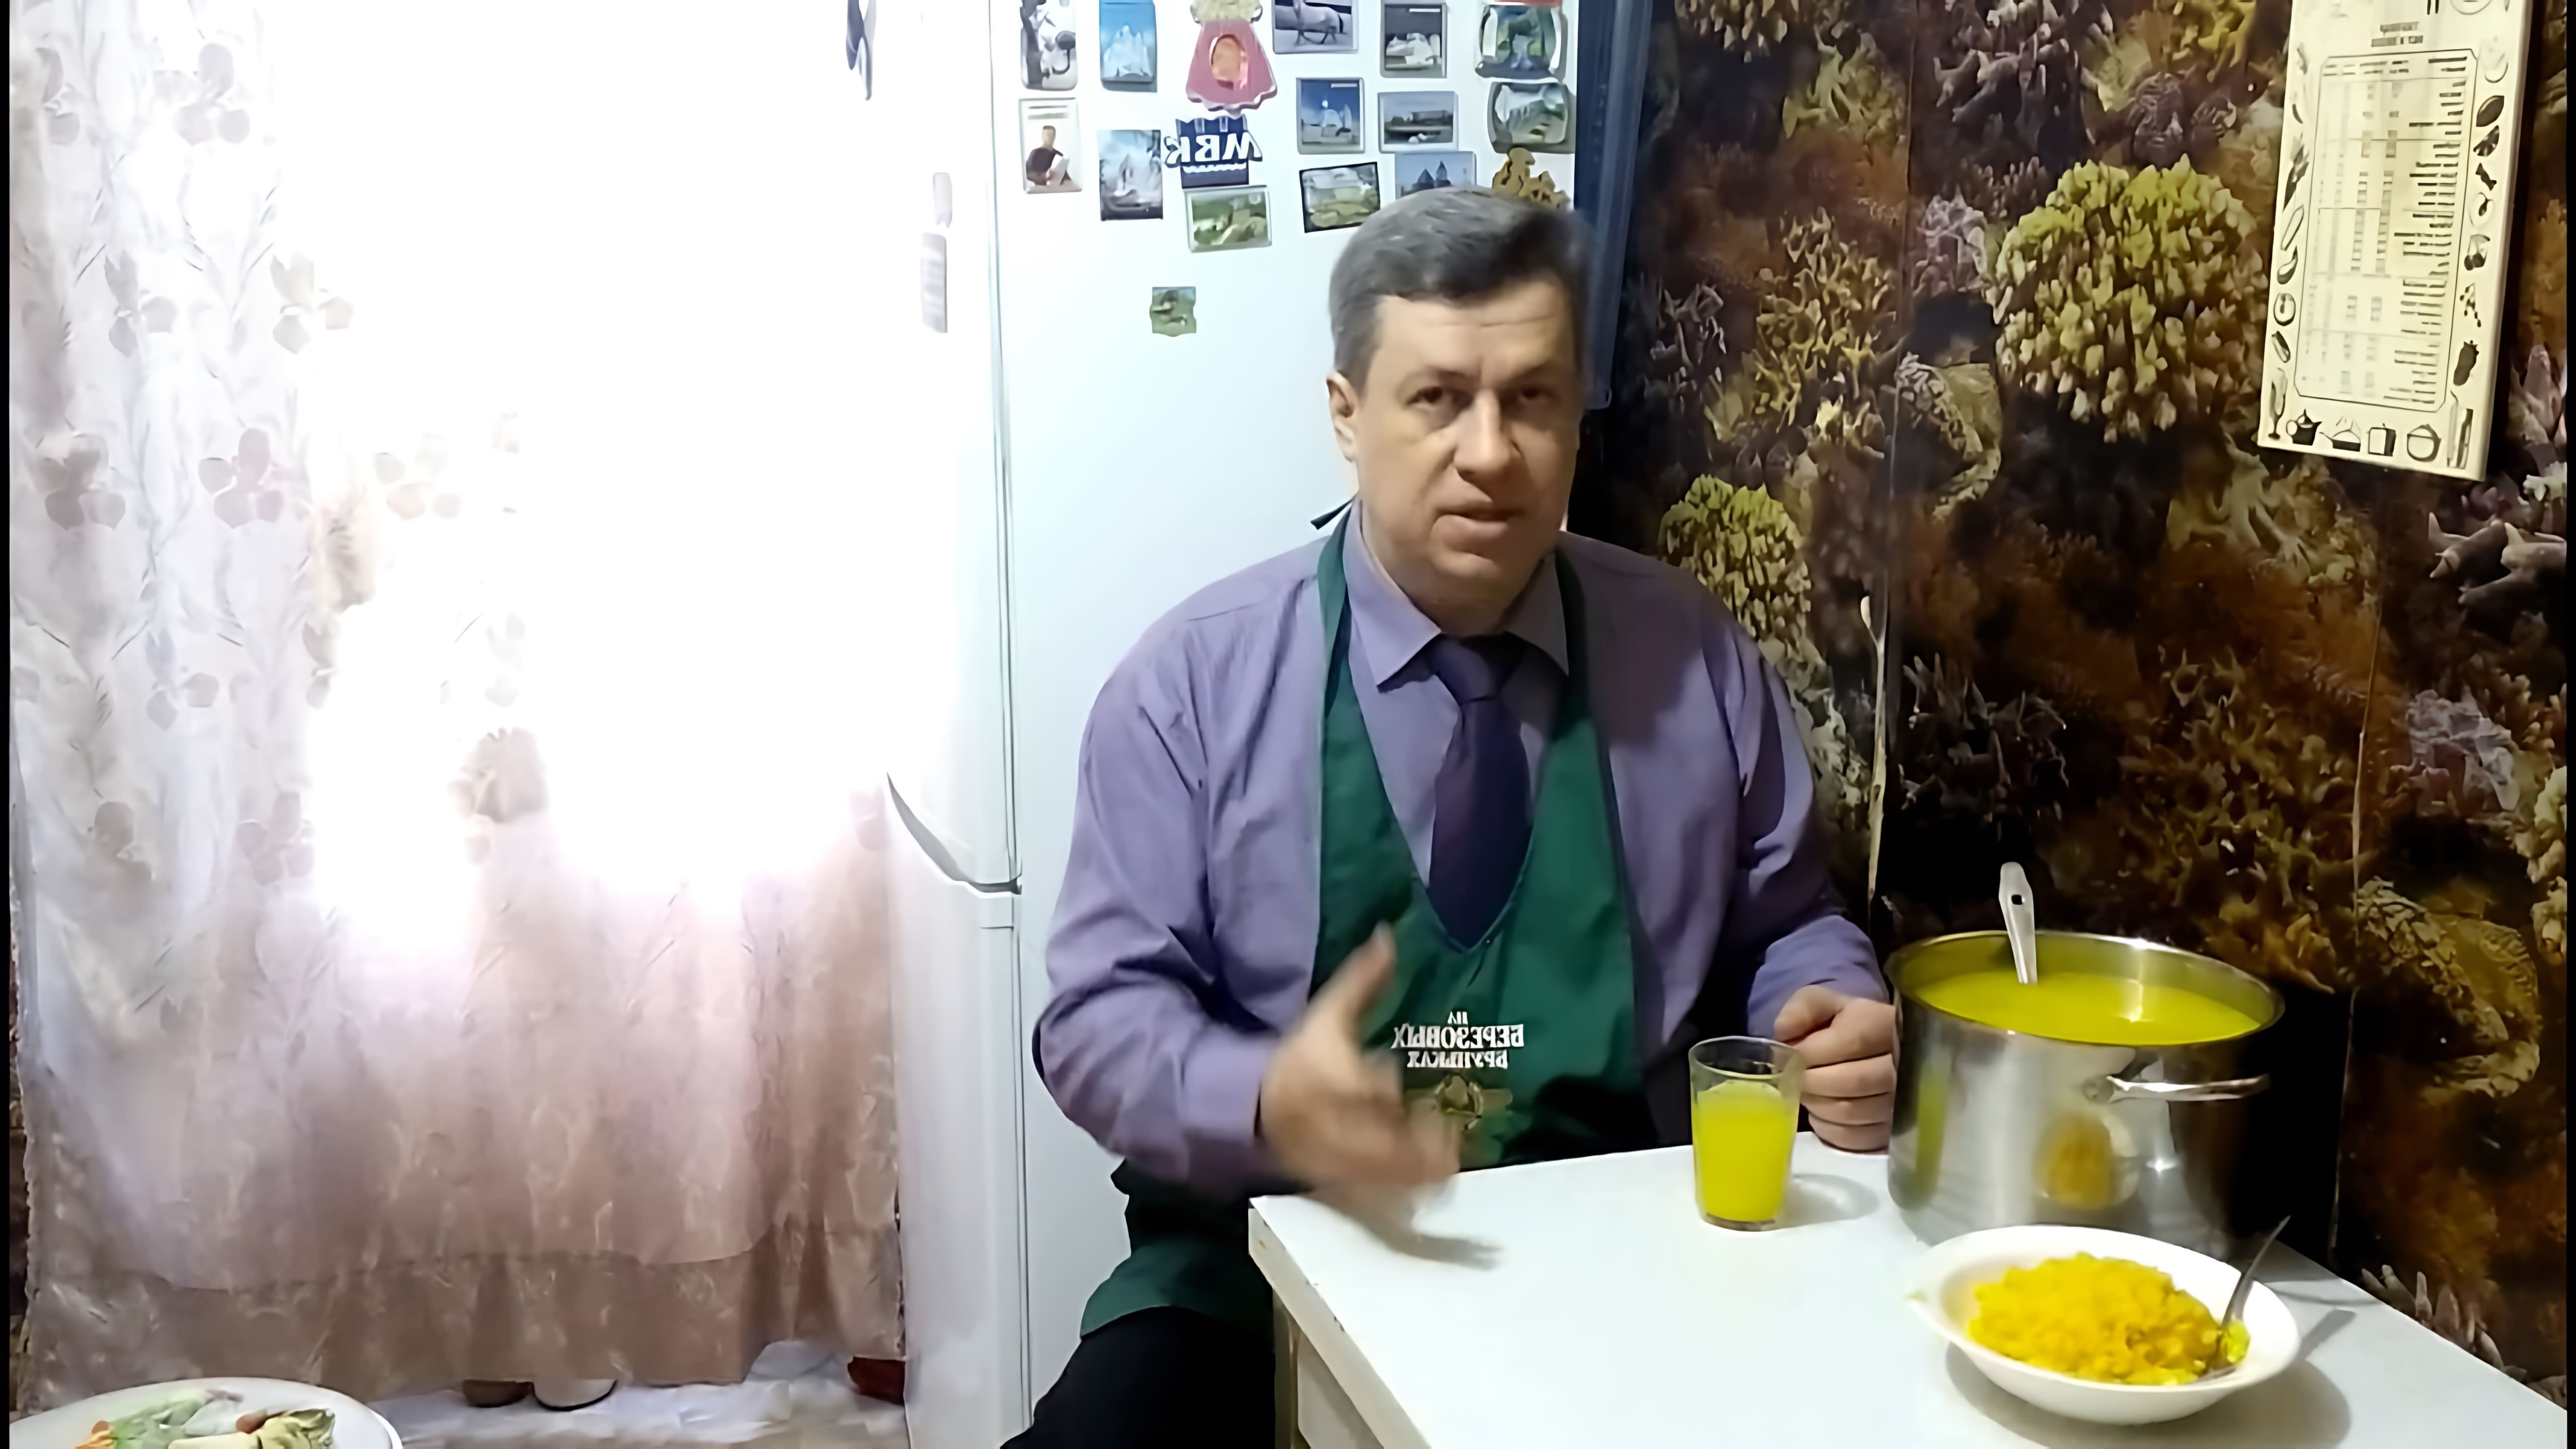 В этом видео демонстрируется процесс приготовления апельсинового сока из замороженных апельсинов